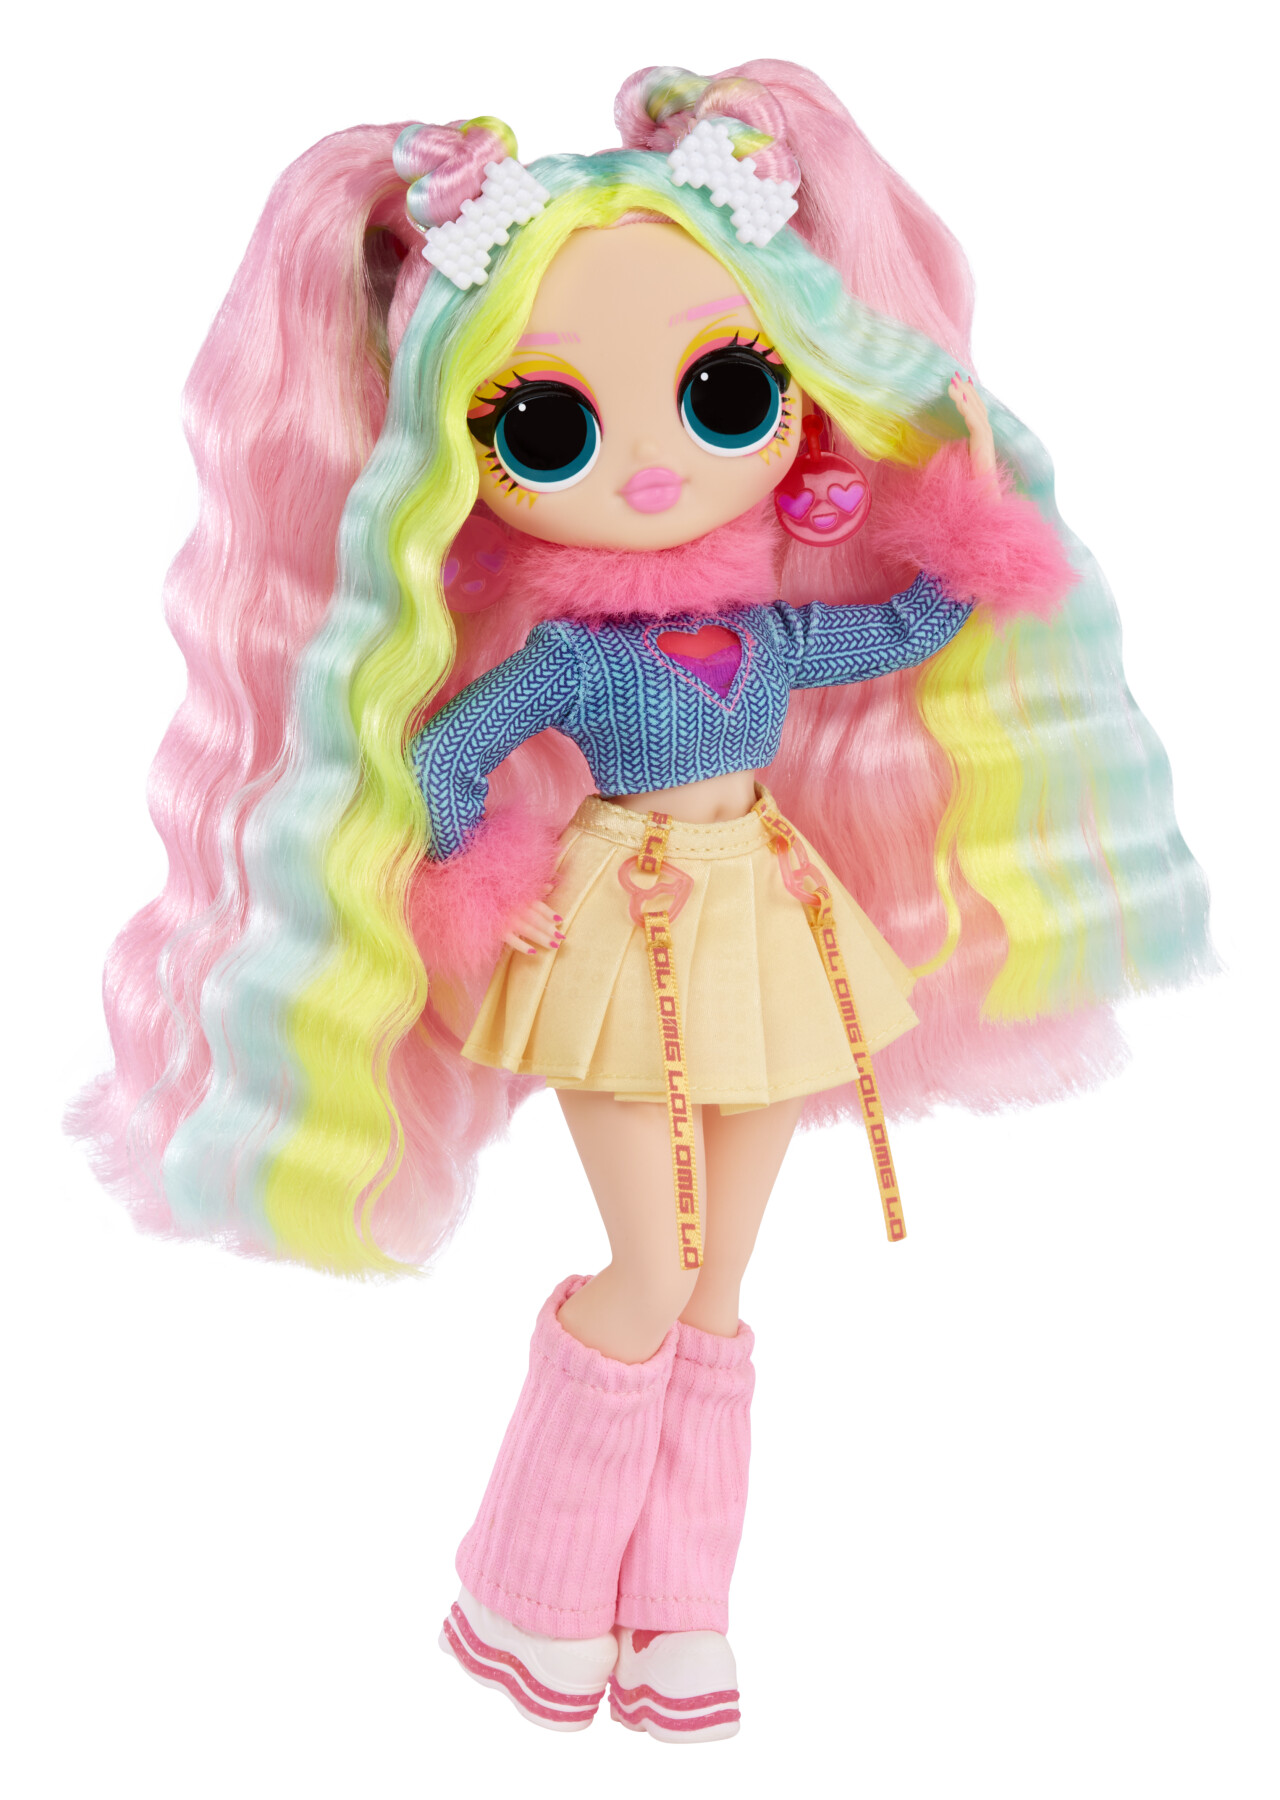 Lol surprise omg sunshine makeover fashion doll: bubblegum dj. bambola cambia colore, numerose sorprese e accessori favolosi - LOL